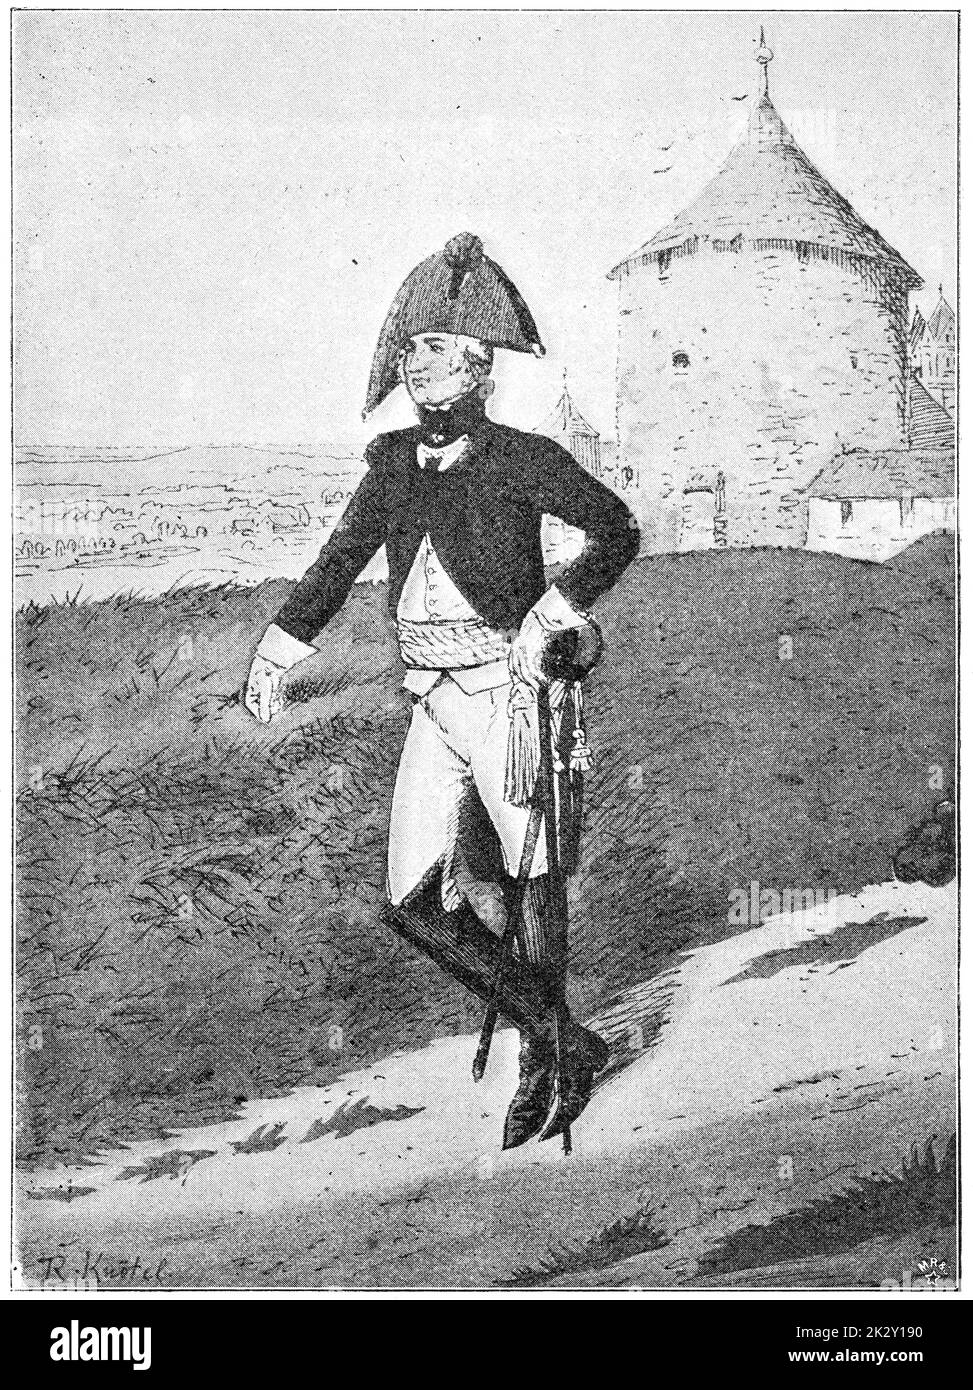 Officier d'infanterie Episcopal Munster (1800). Illustration du 19e siècle. Allemagne. Arrière-plan blanc. Banque D'Images